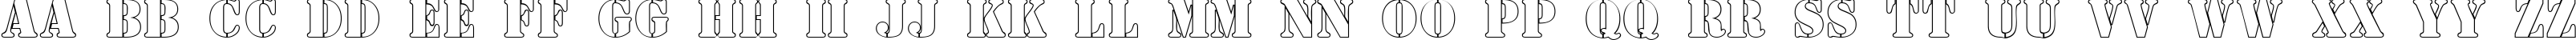 Пример написания английского алфавита шрифтом a_SamperOtl